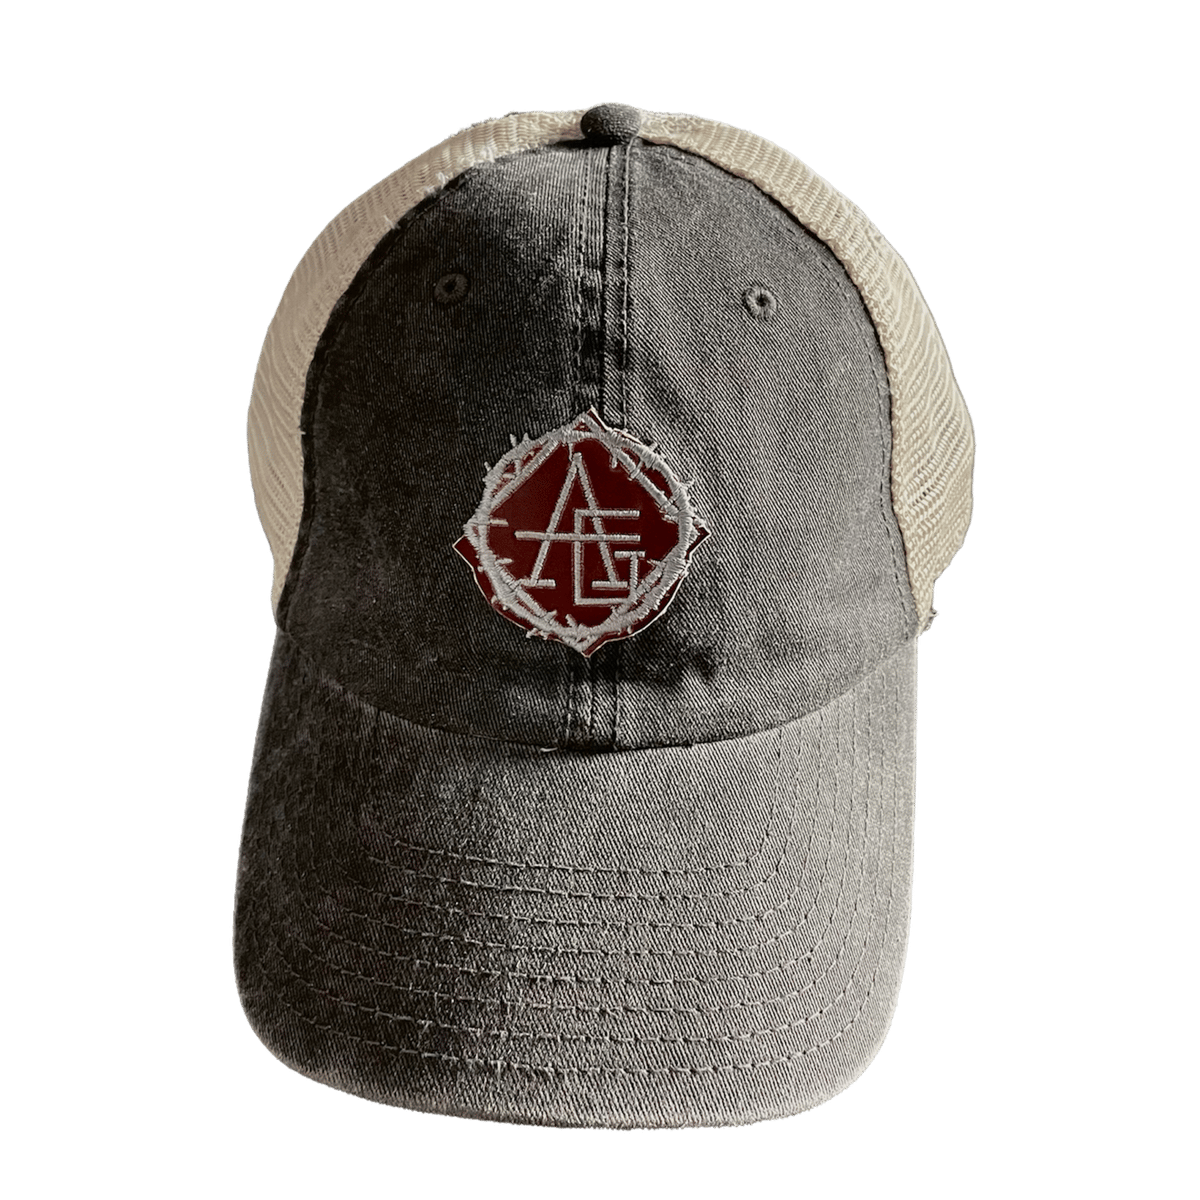 Image of Heat reactive logo trucker hat 🔥 